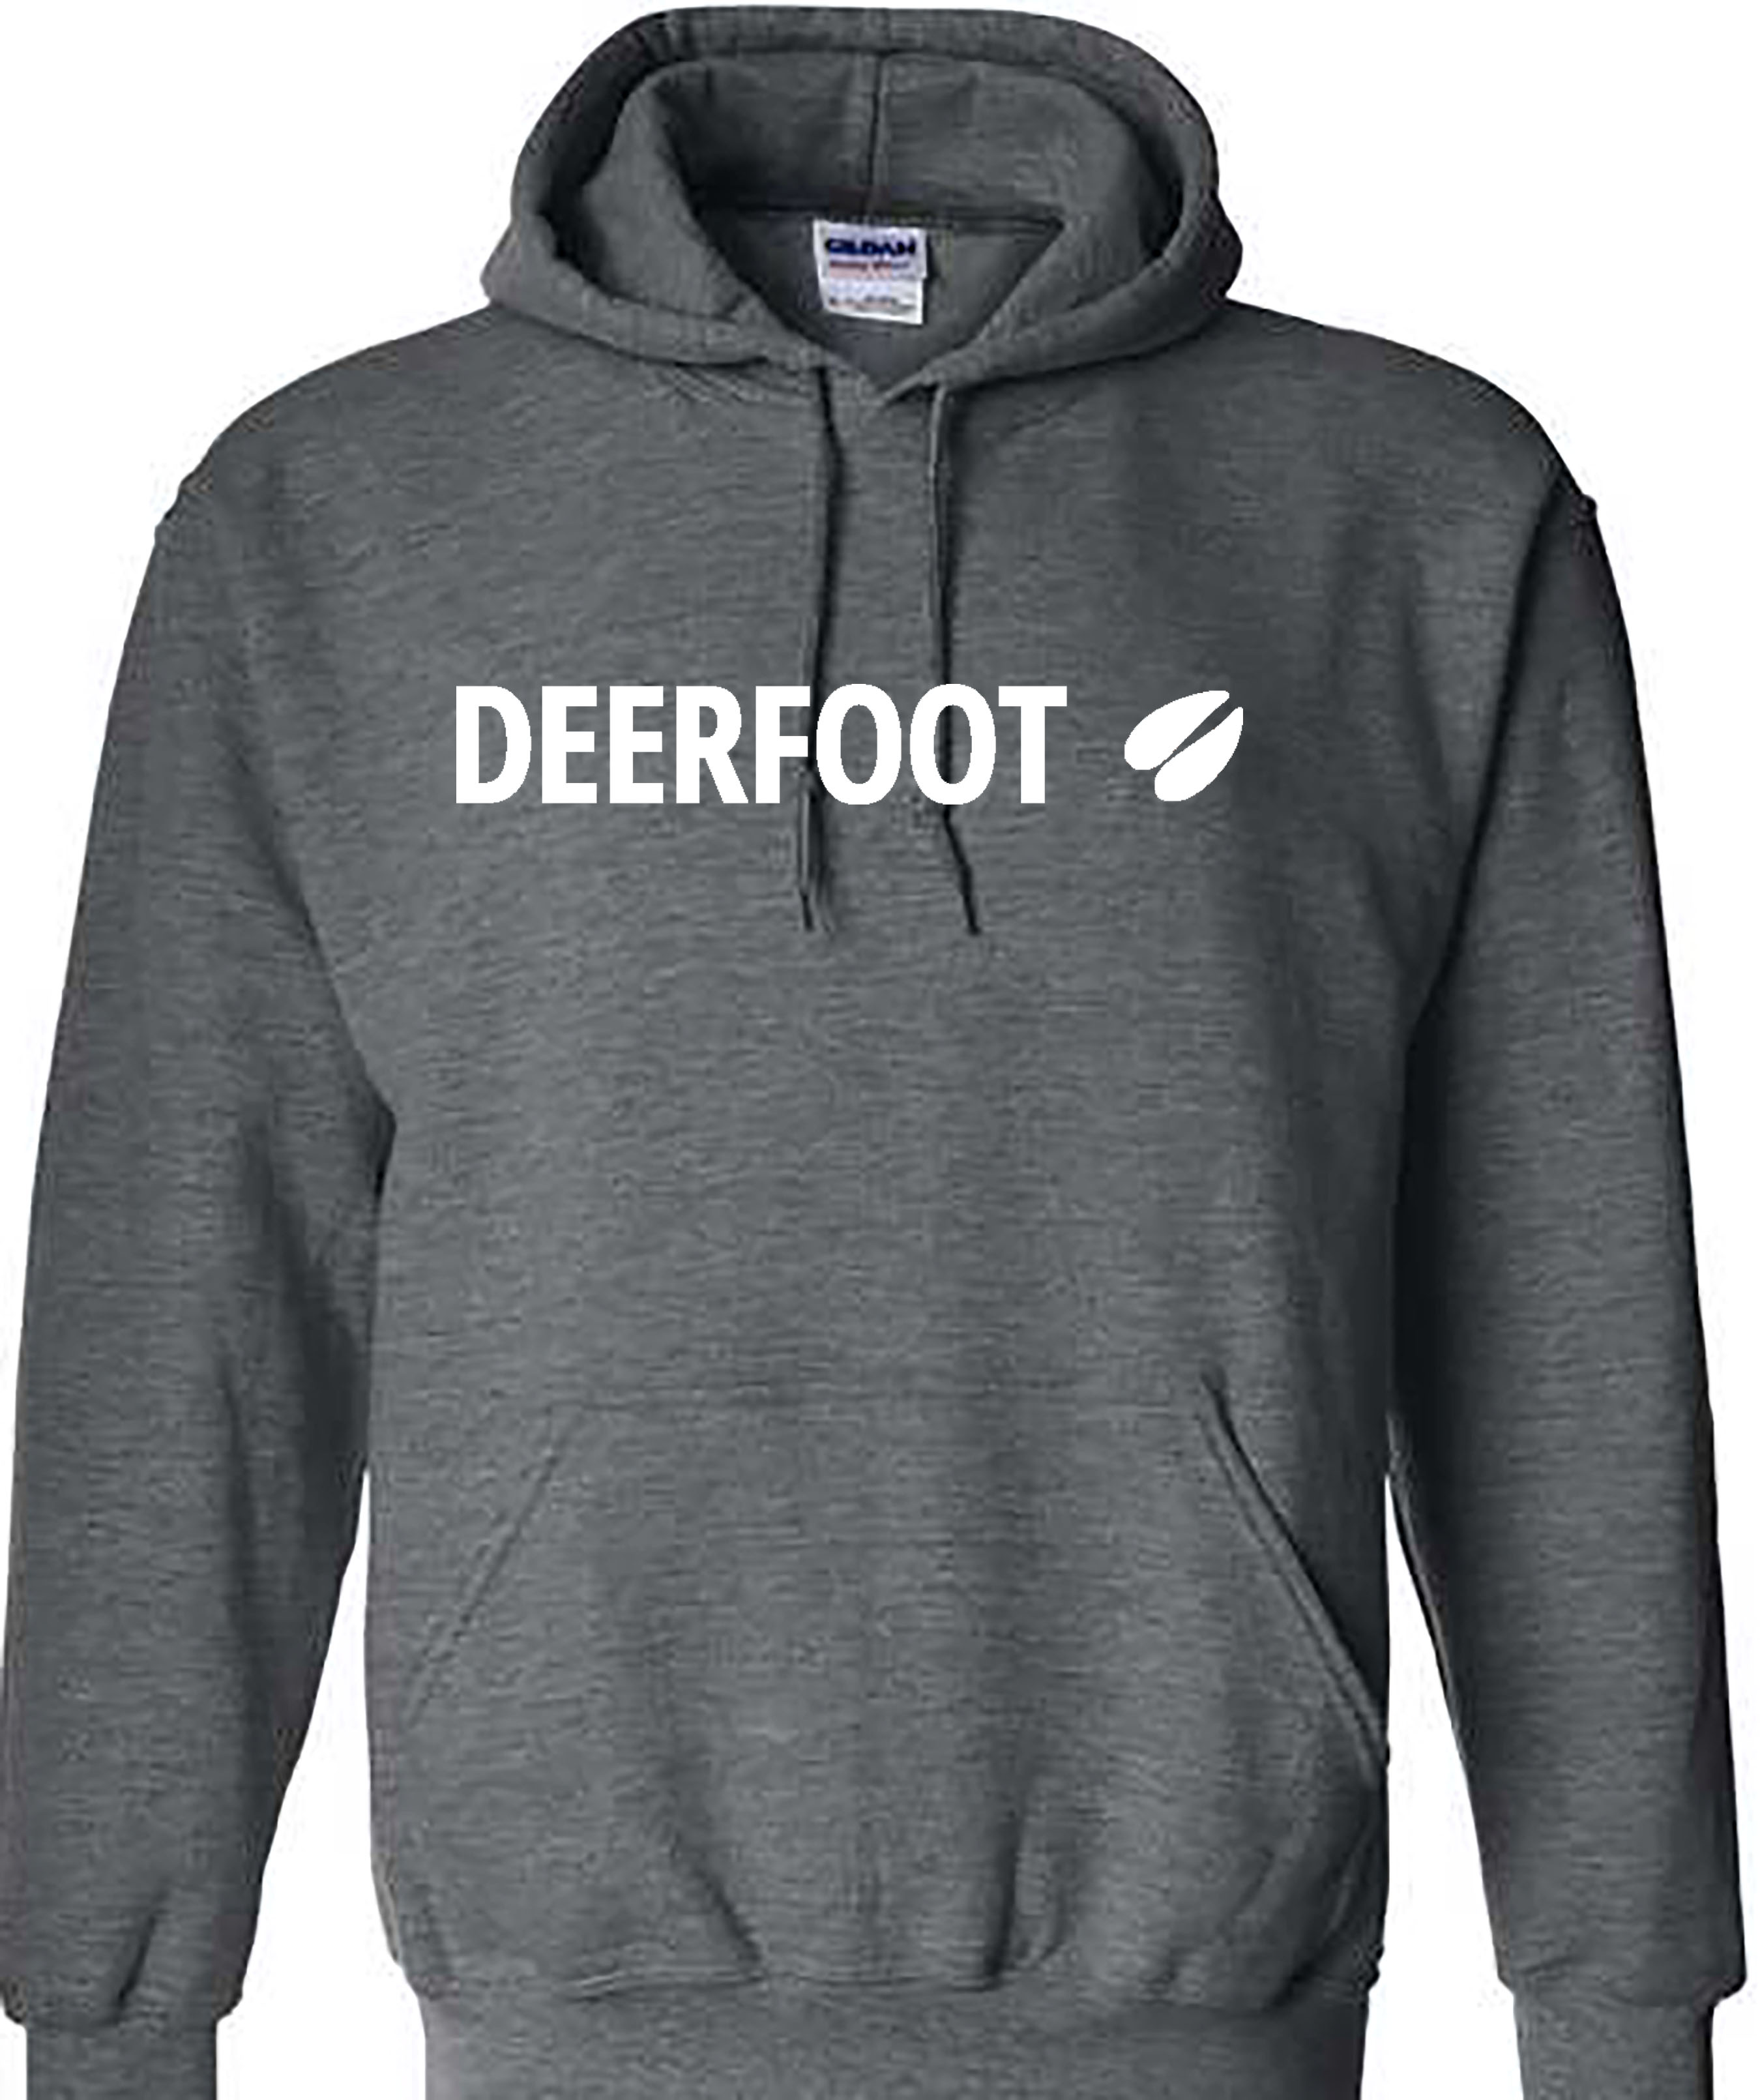 Deerfoot Logo on Dark Heather Hoodie